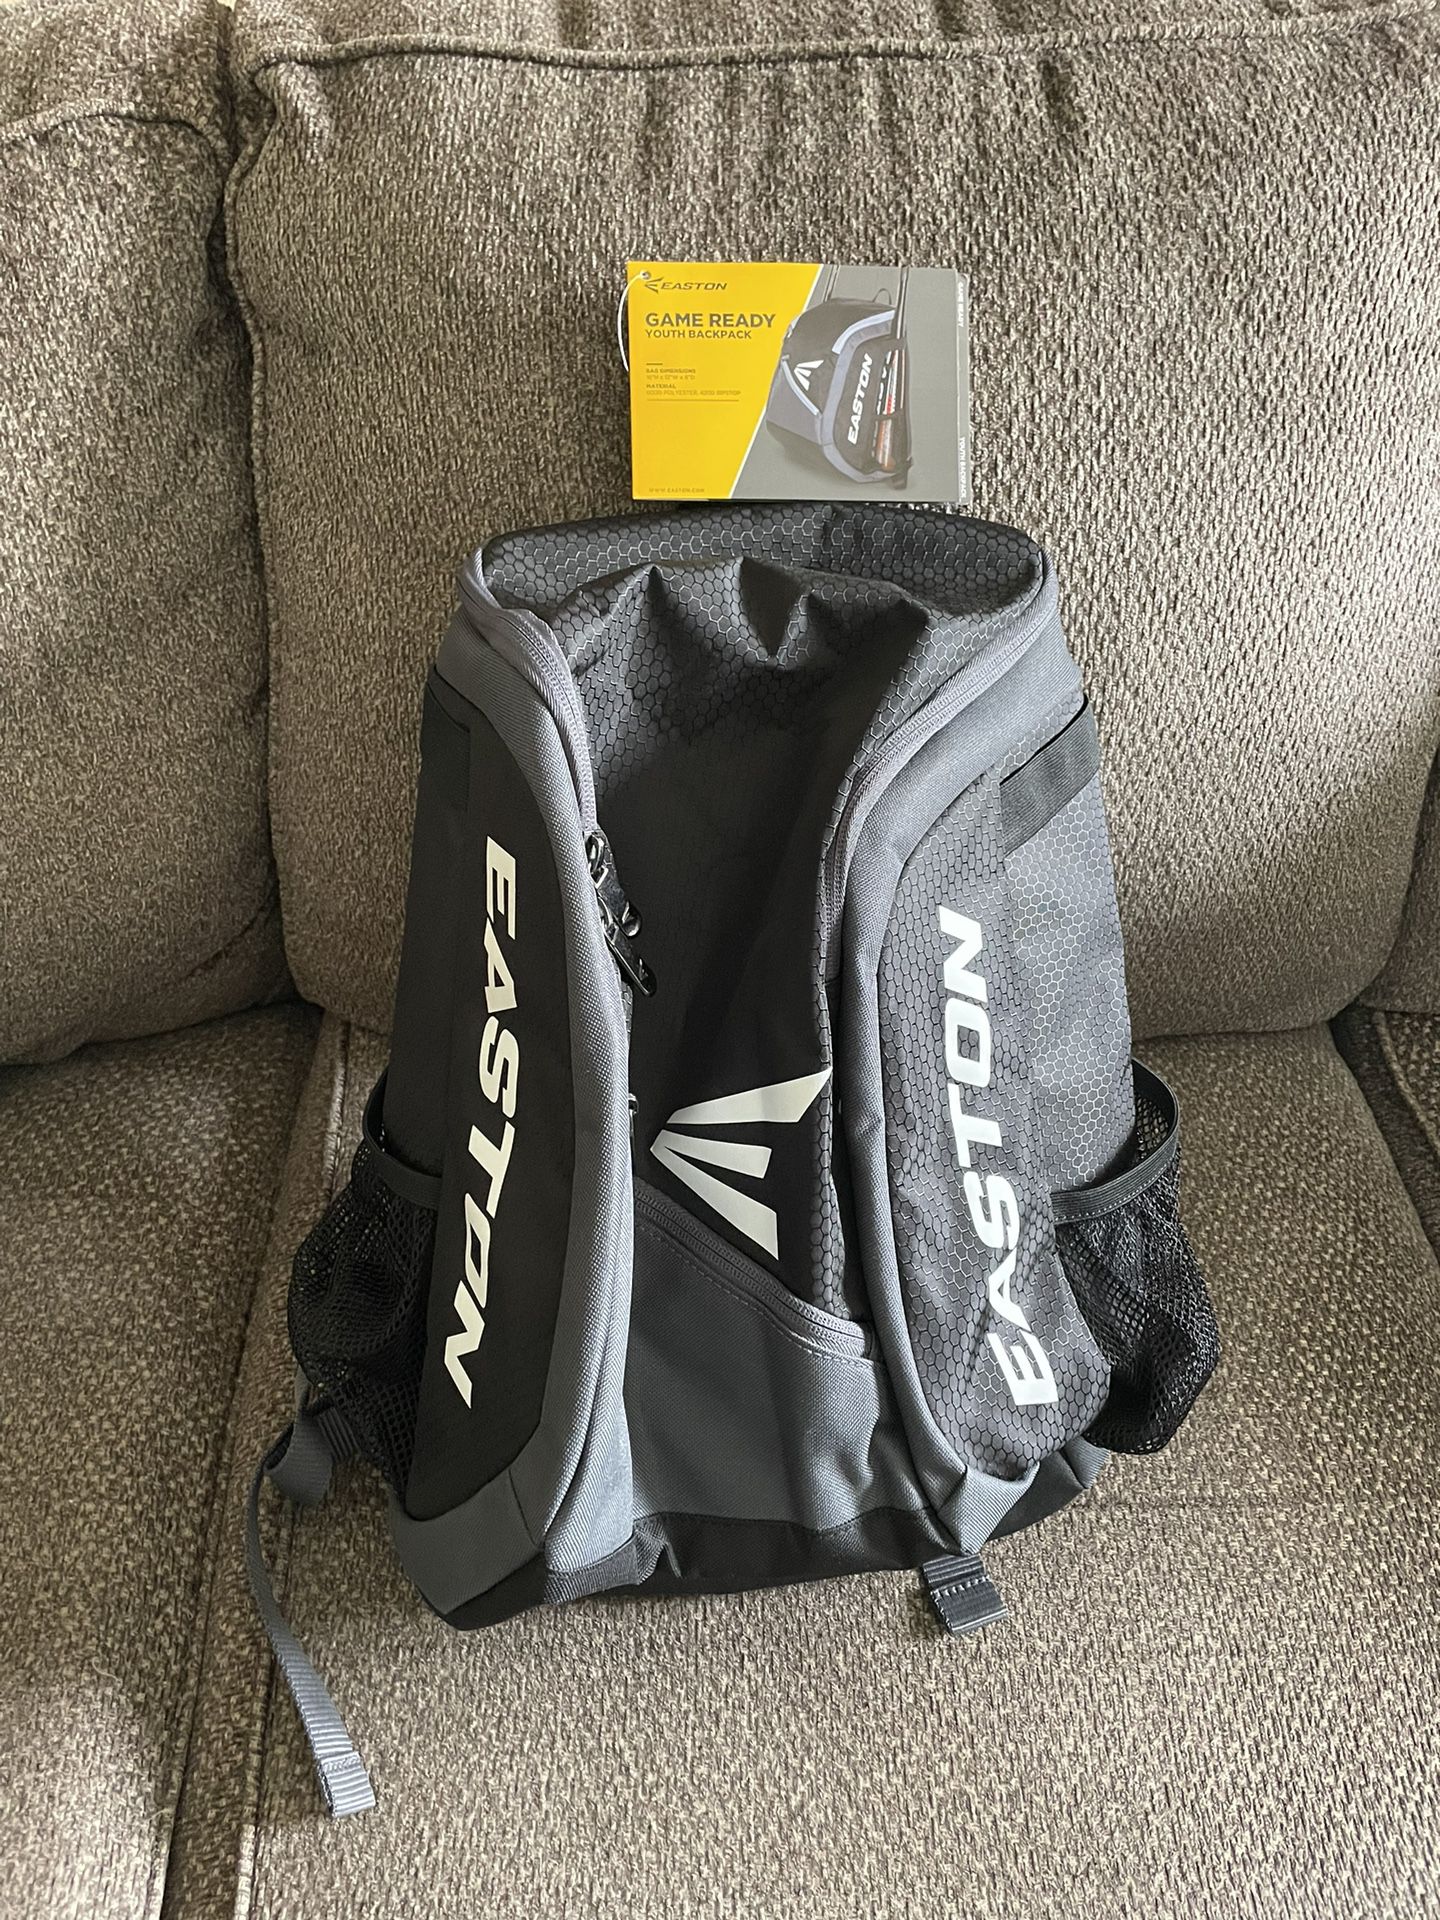 Easton | GAME READY Backpack Equipment Bag | T-Ball / Rec / Travel | Baseball & Softball